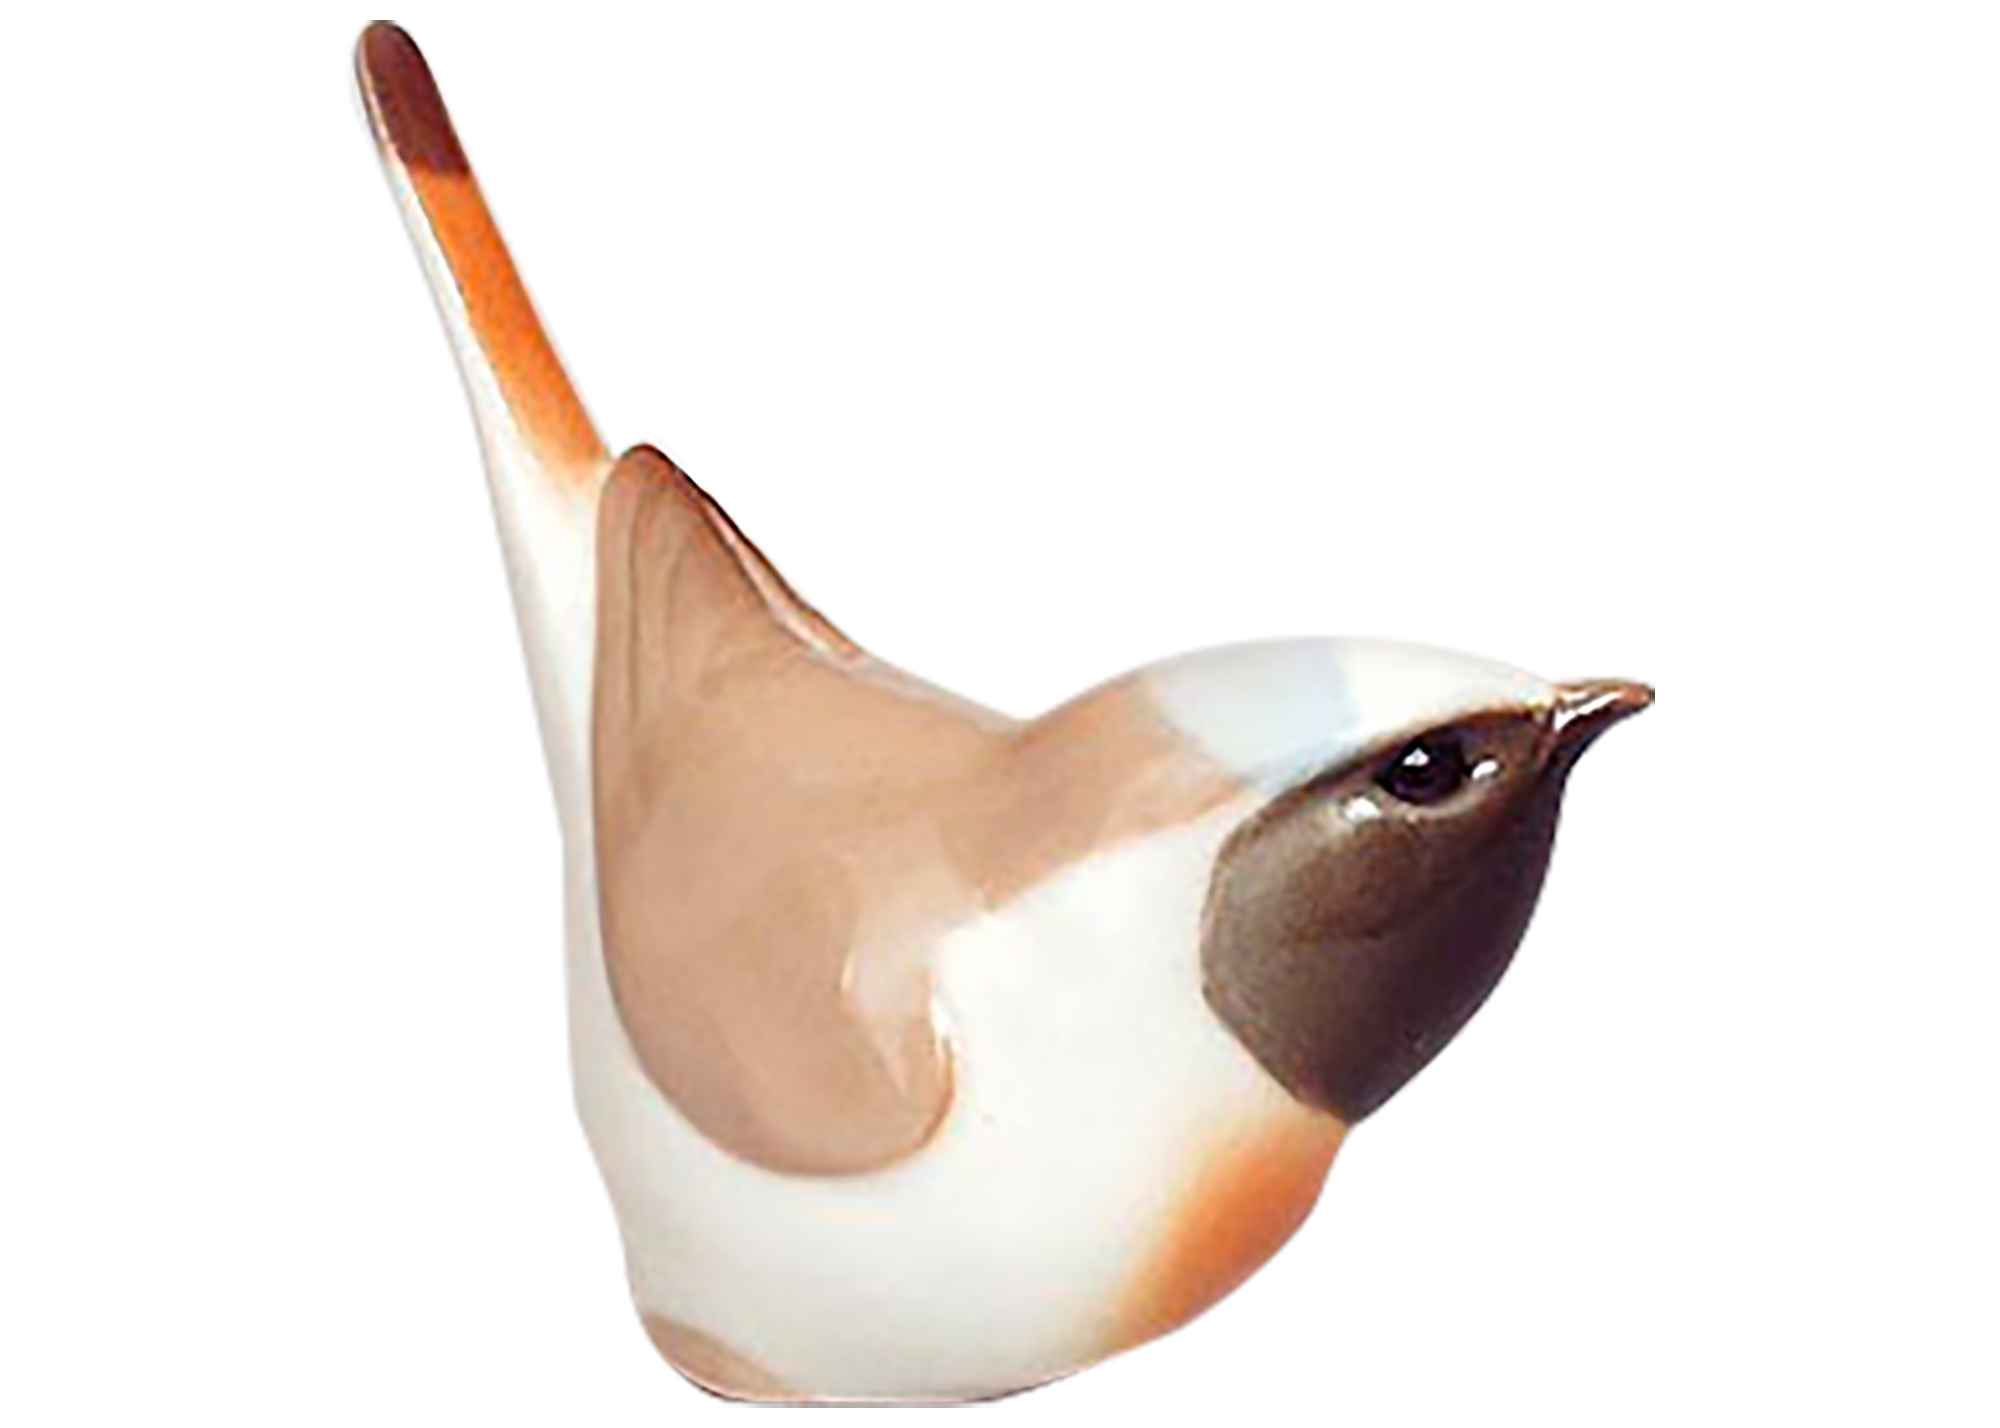 Buy Redstart Bird Figurine at GoldenCockerel.com